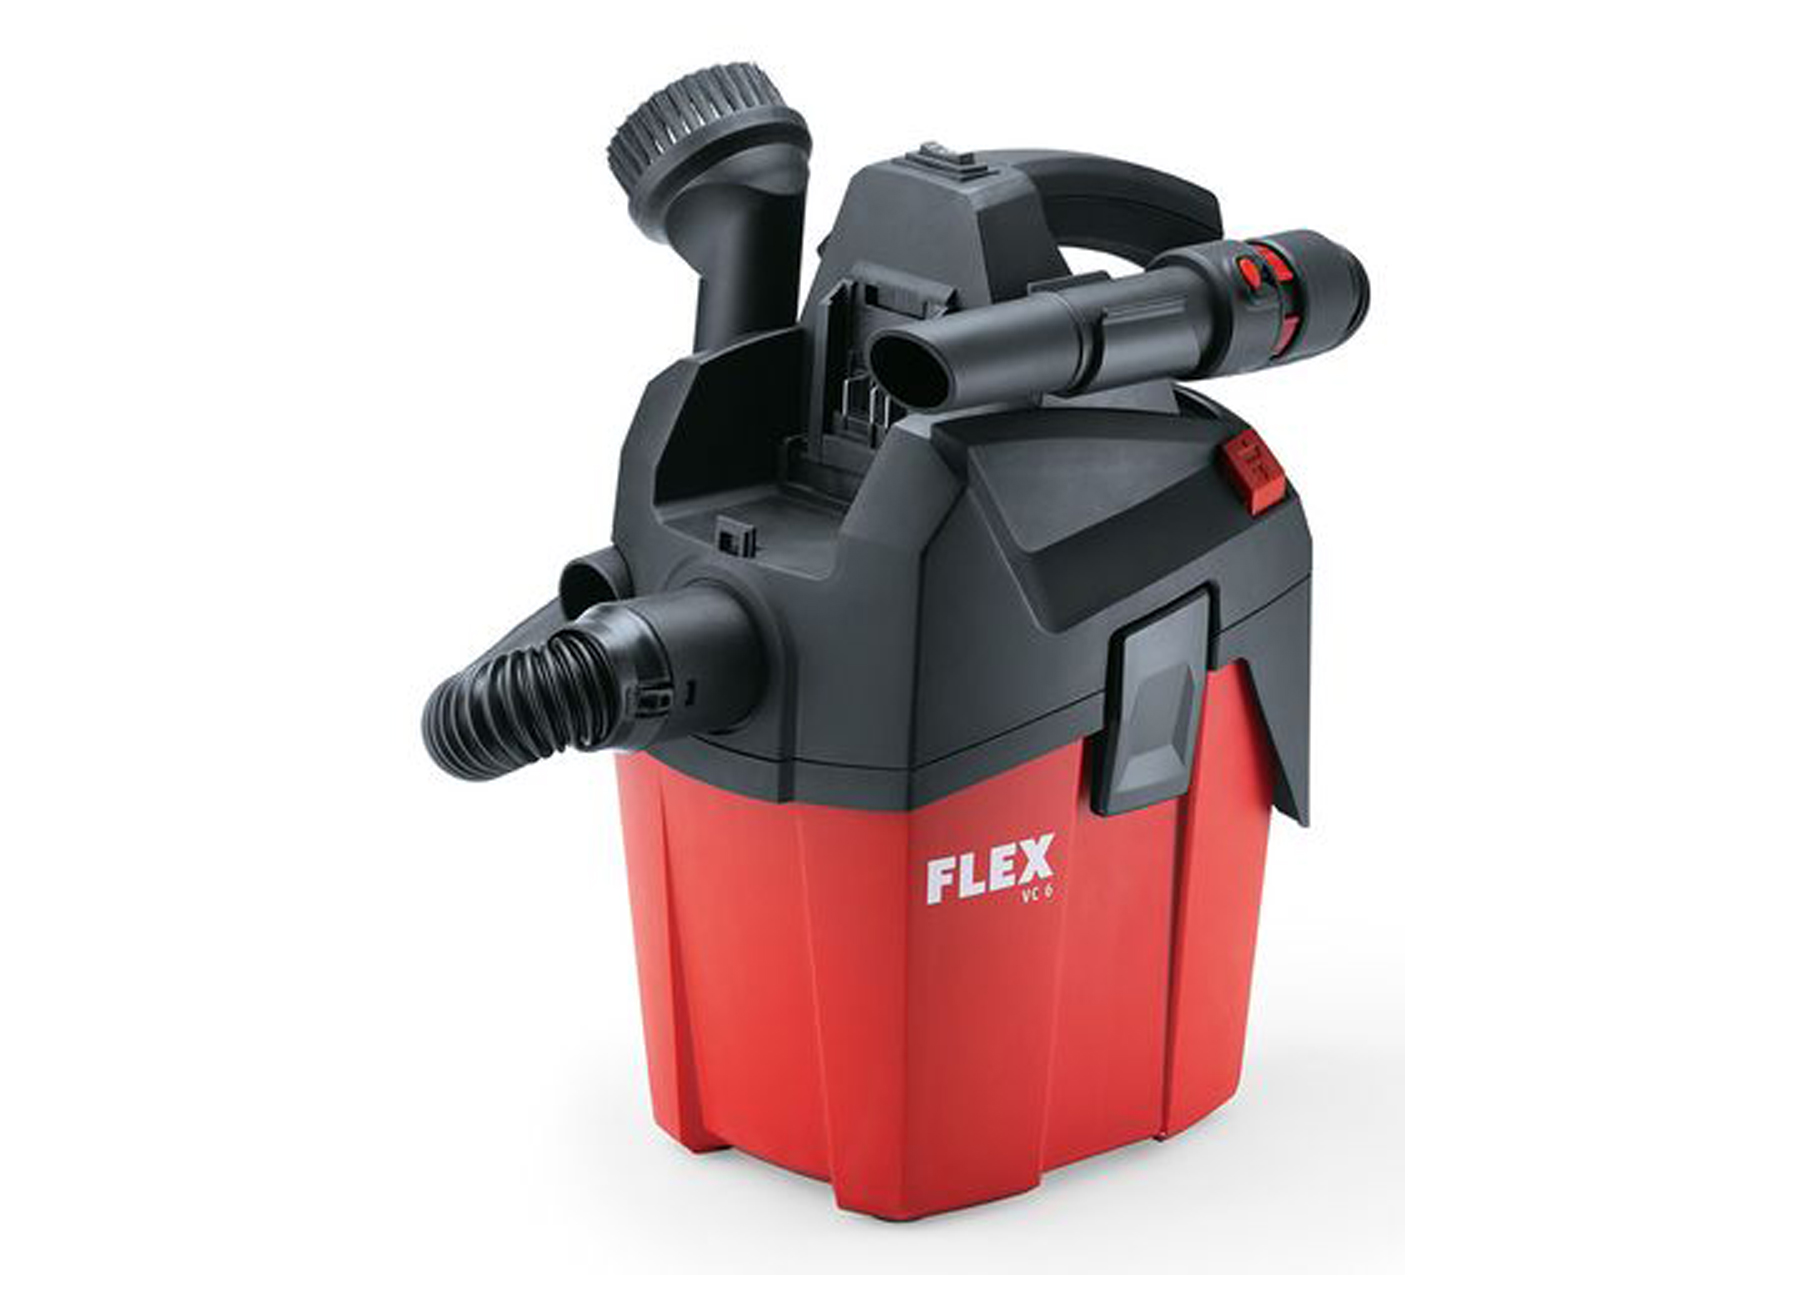 Flex Compacte Stofzuiger Op Accu 6 L Mc 18.0 - gereedschappen stofzuigen reinigen - stofzuigers accu flex compacte stofzuiger op accu vc 6 l mc 180